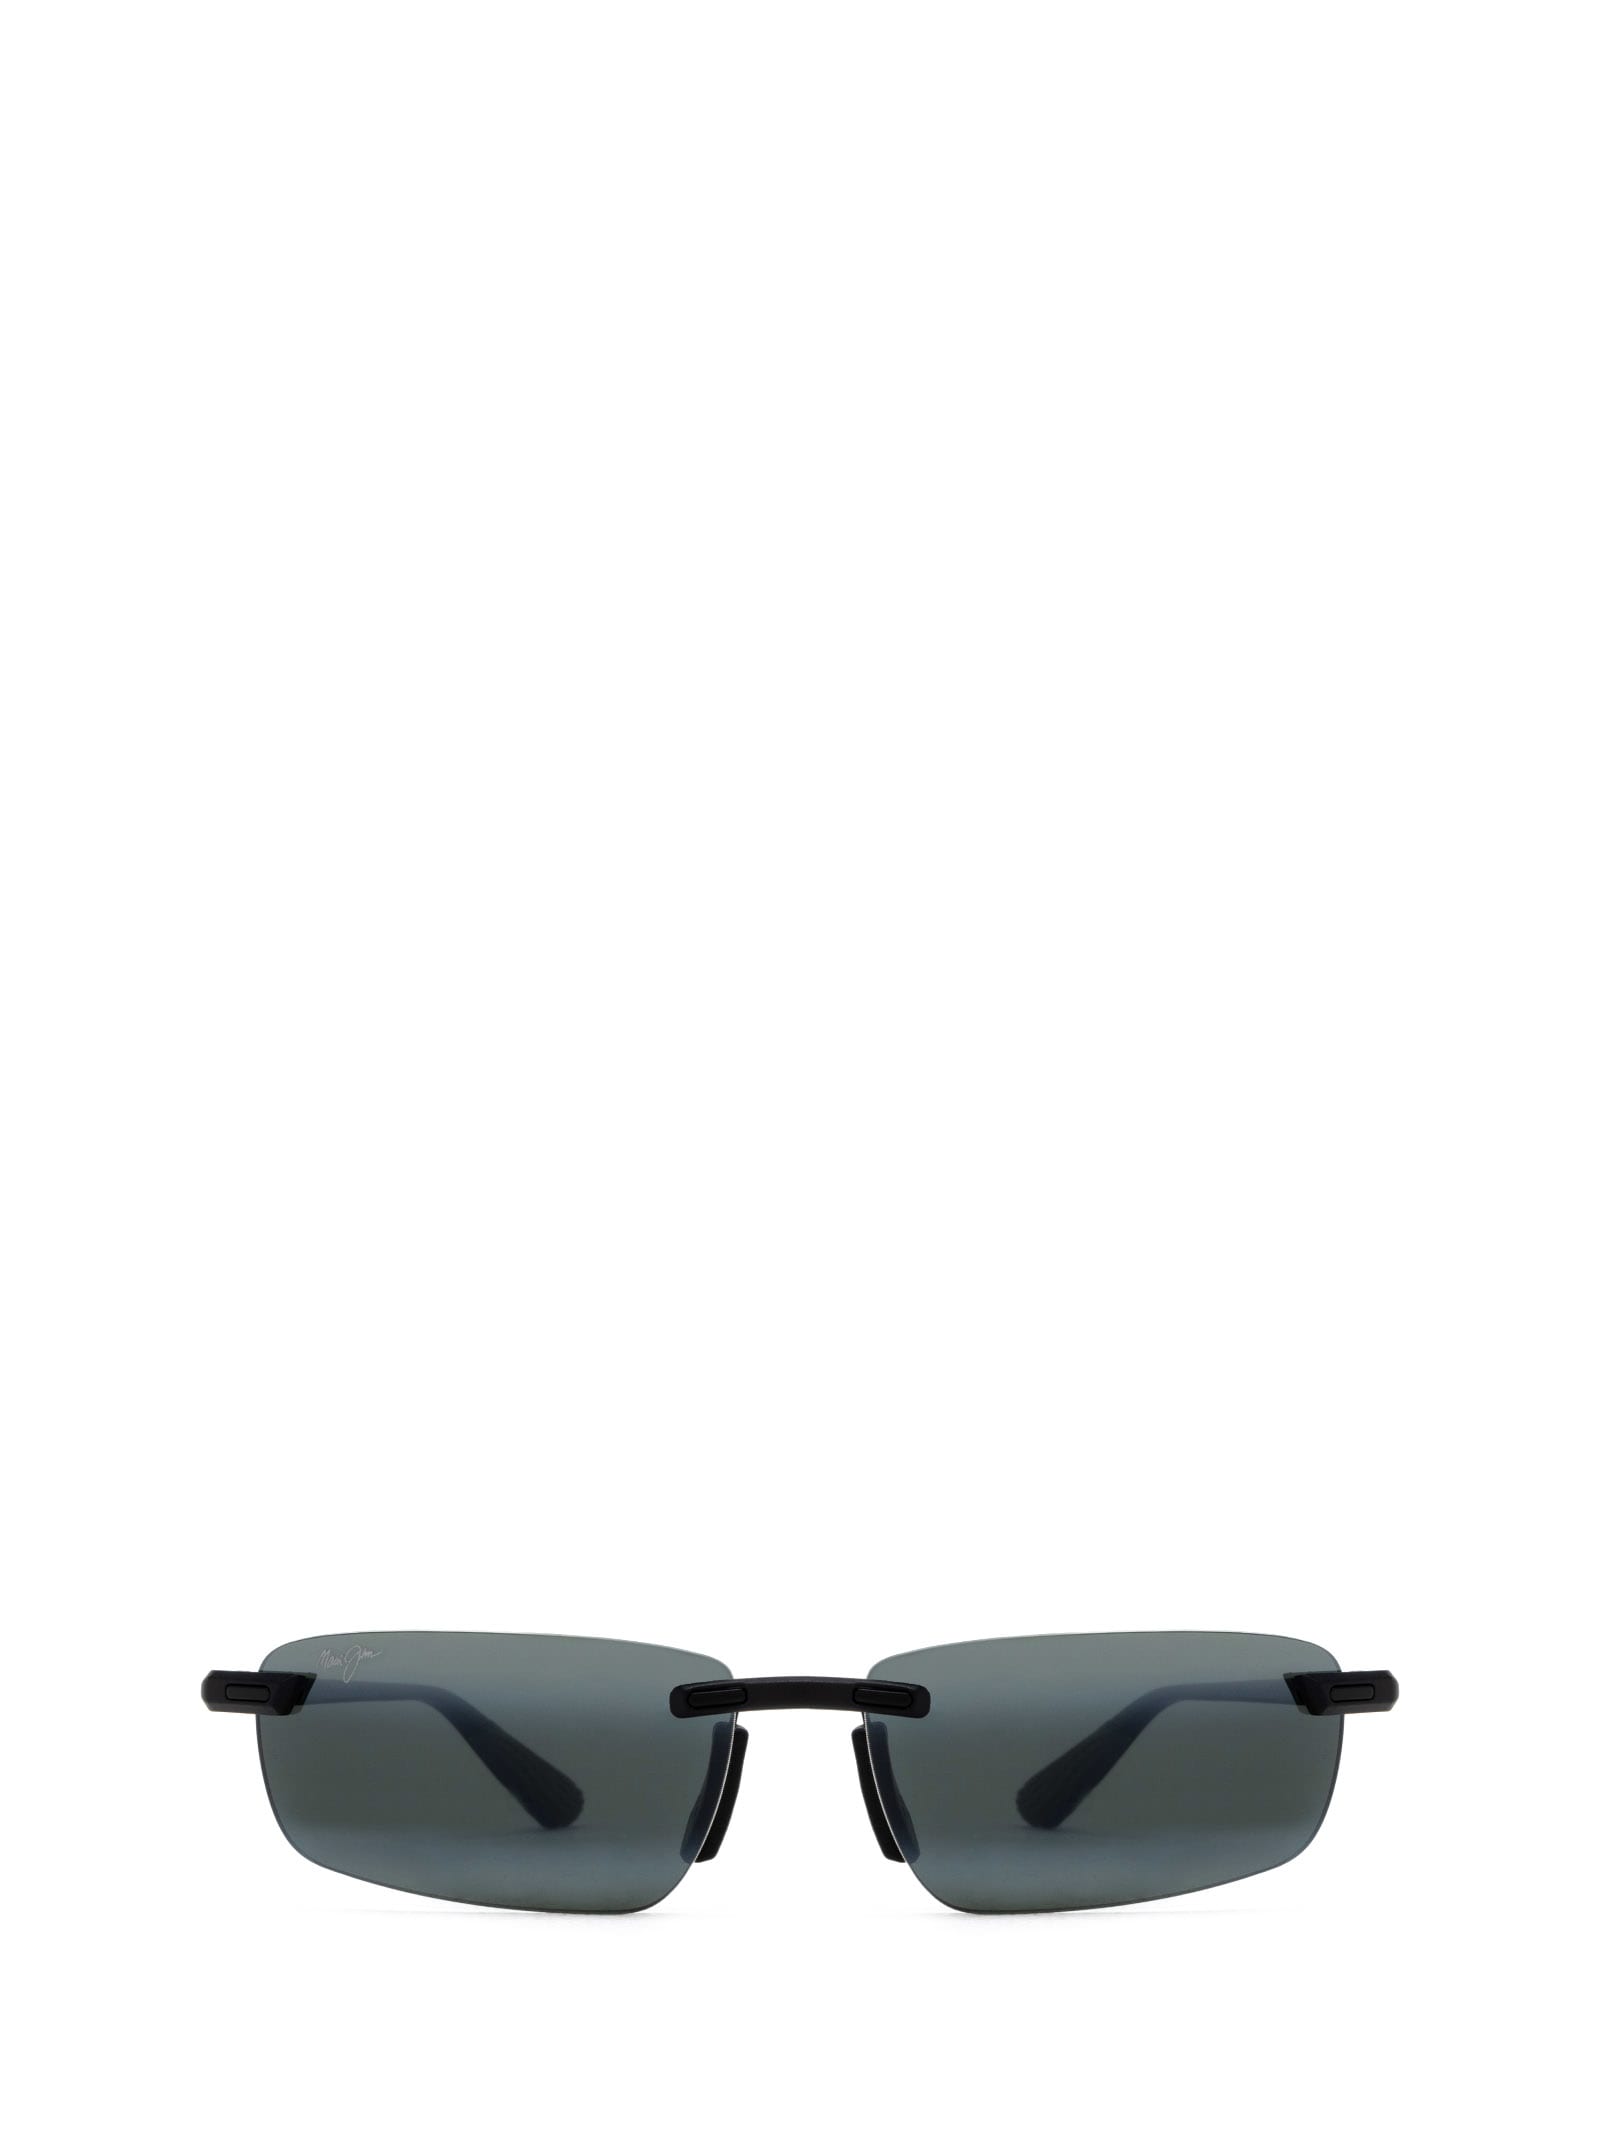 Shop Maui Jim Mj630 Matte Black Sunglasses